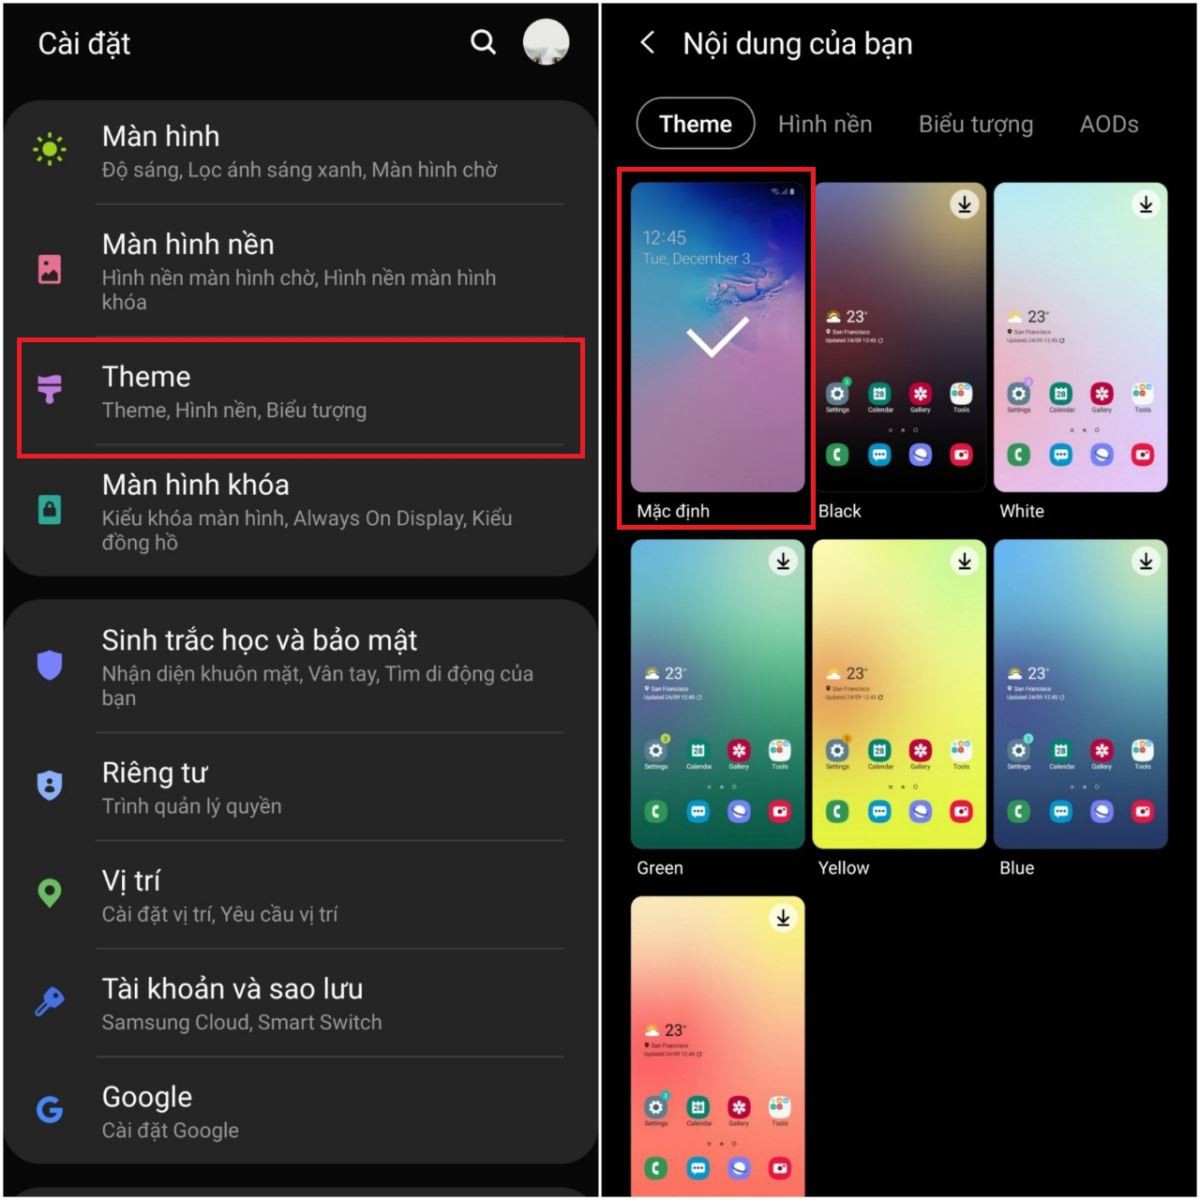 Các cách để khôi phục giao diện ban đầu trên điện thoại Android (3)